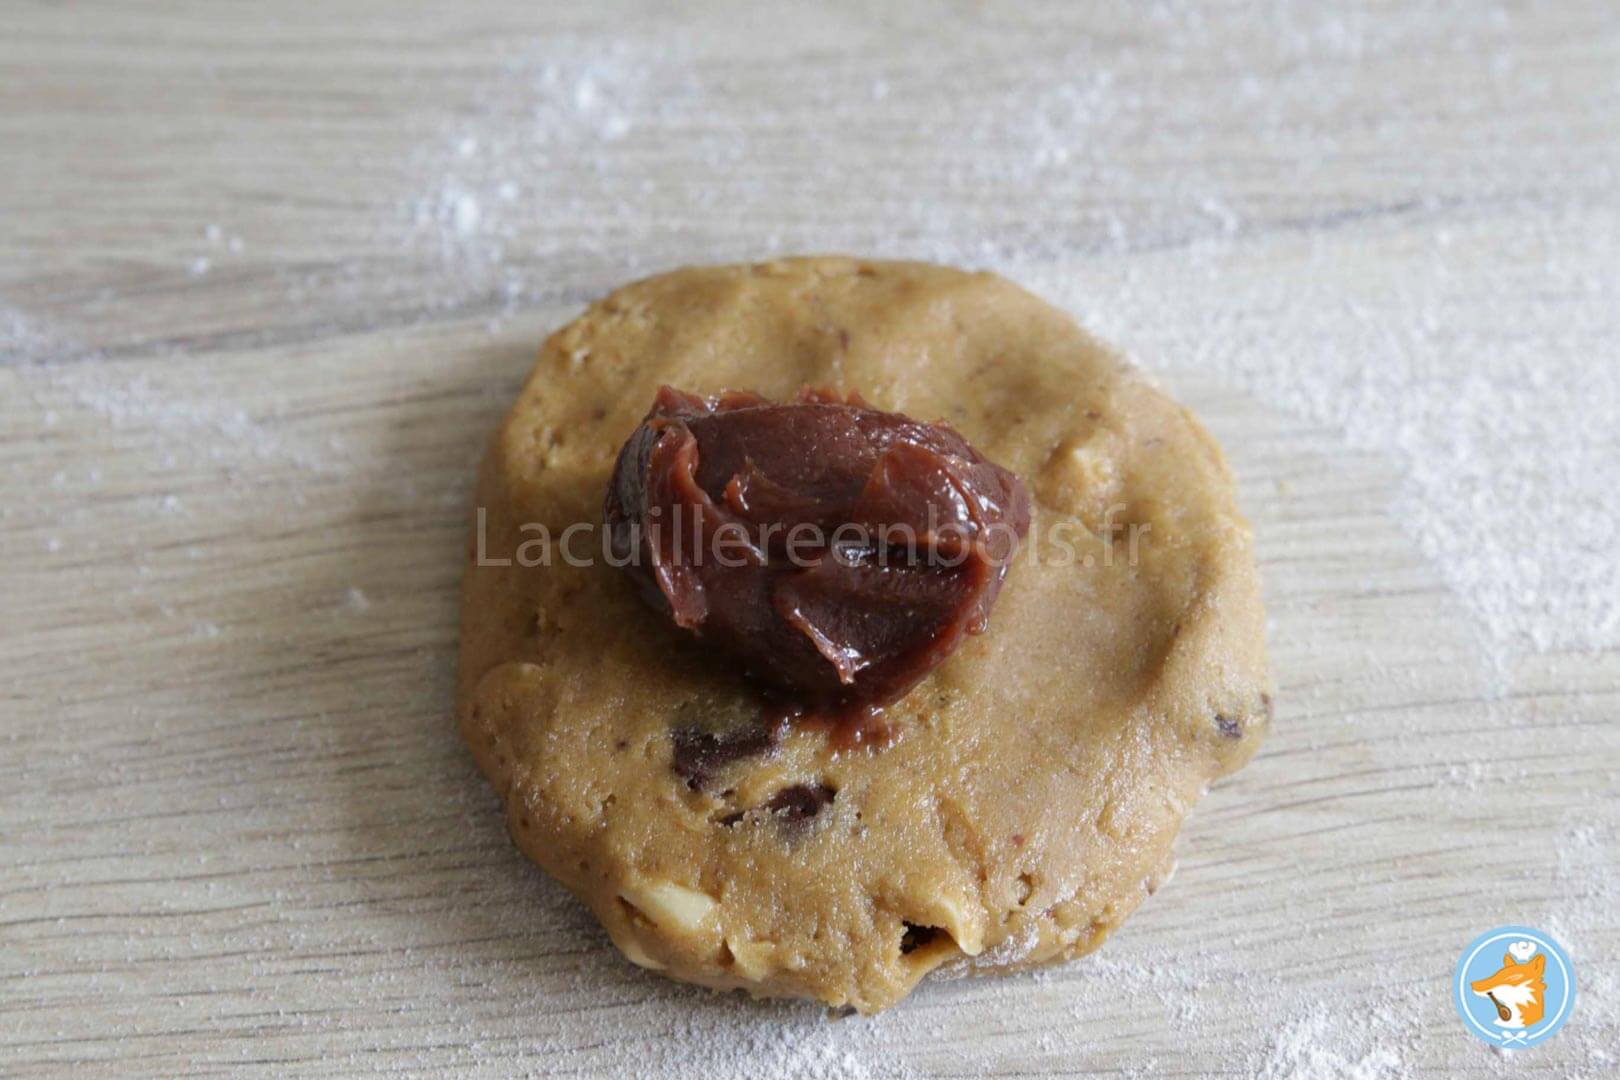 incroyable technique pour fourrer du gianduja dans un cookie